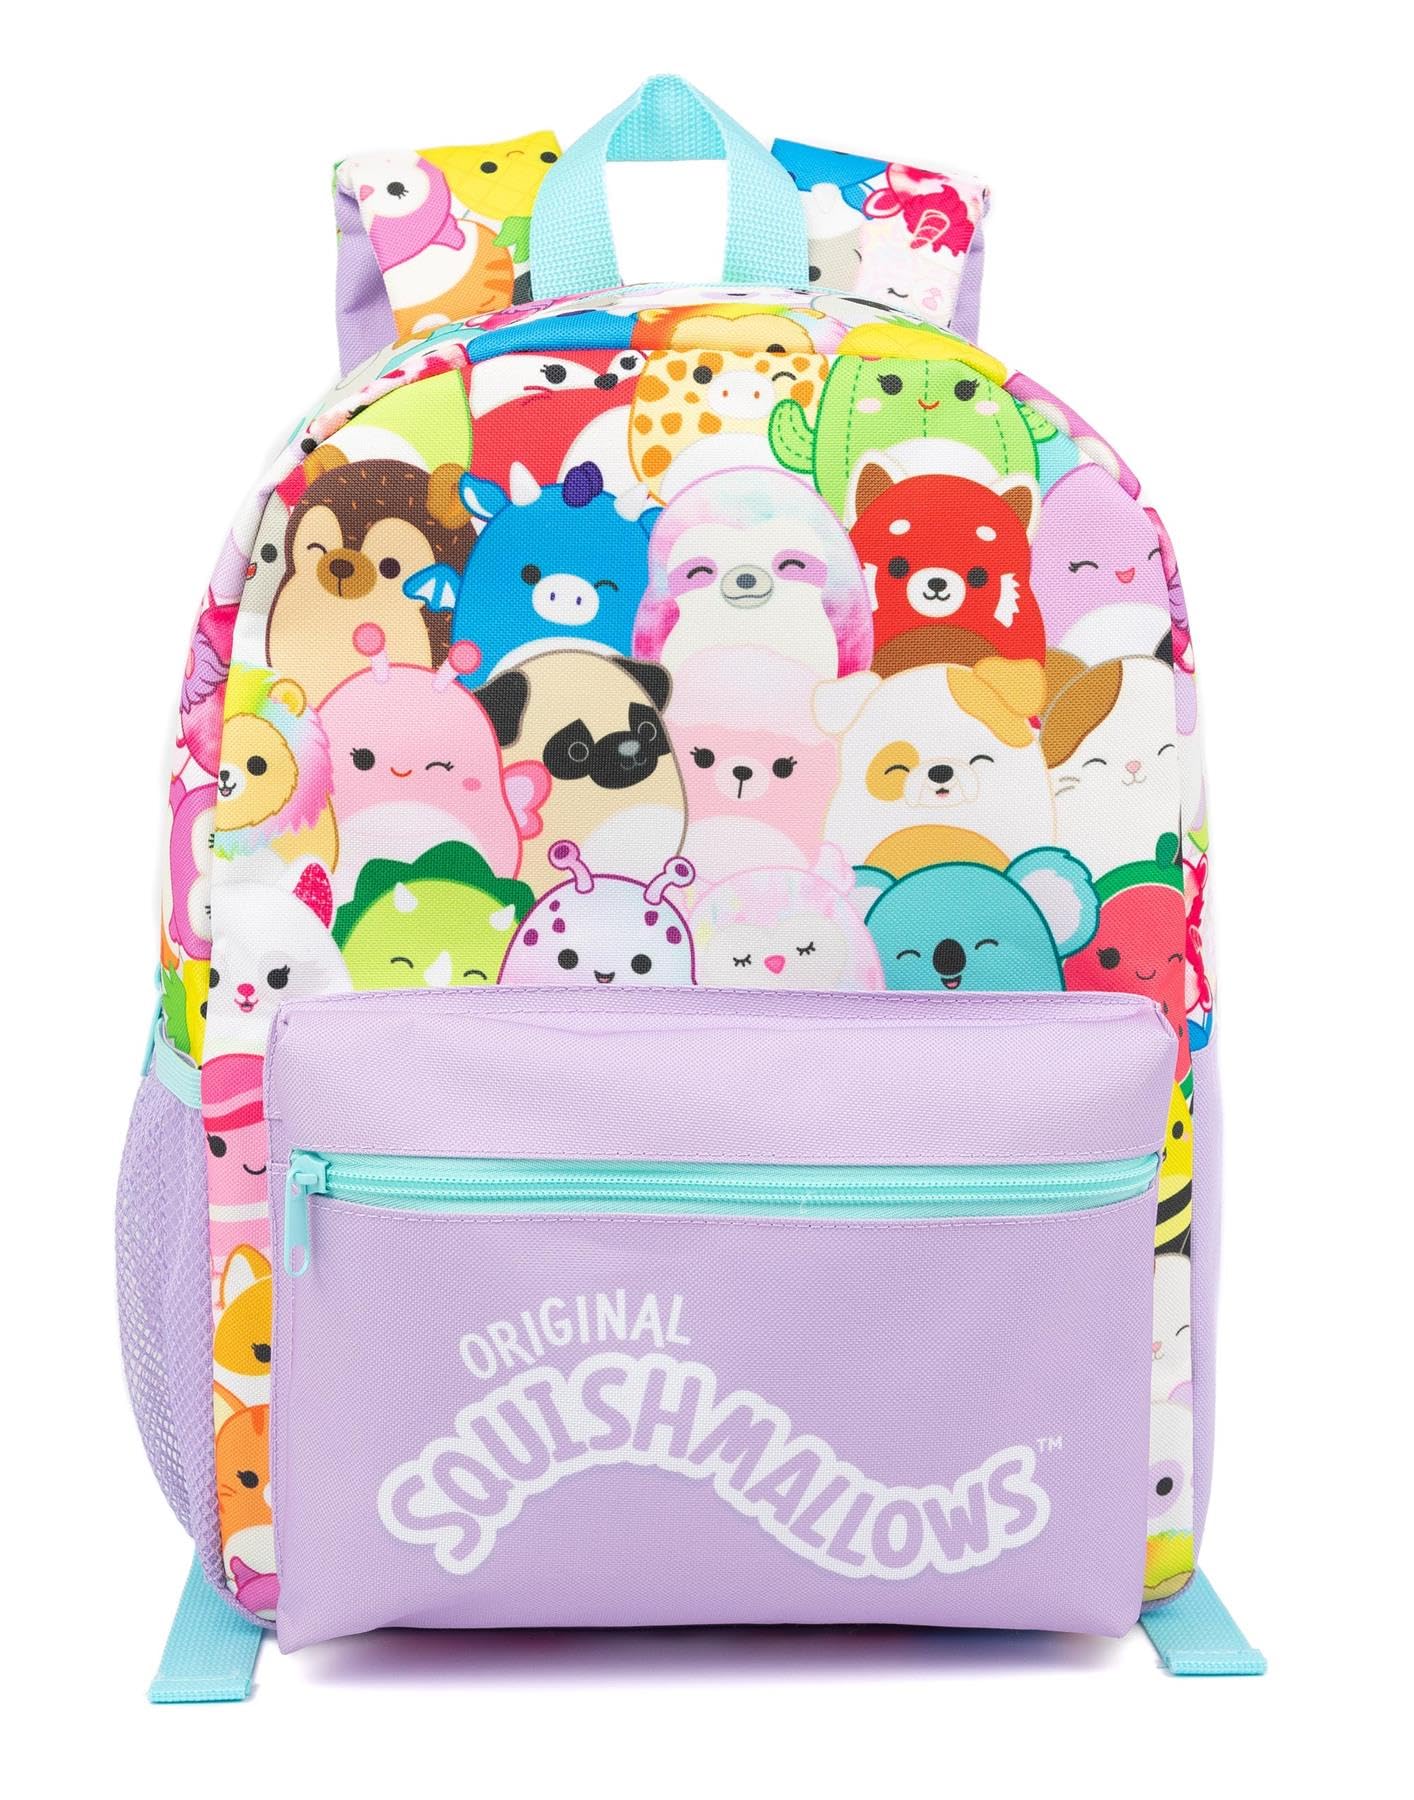 Vanilla Underground Squishmallows Girls Backpack | 4-Piece School Bag Set | Purple Squishmallows Design | Accessories for Organized Days